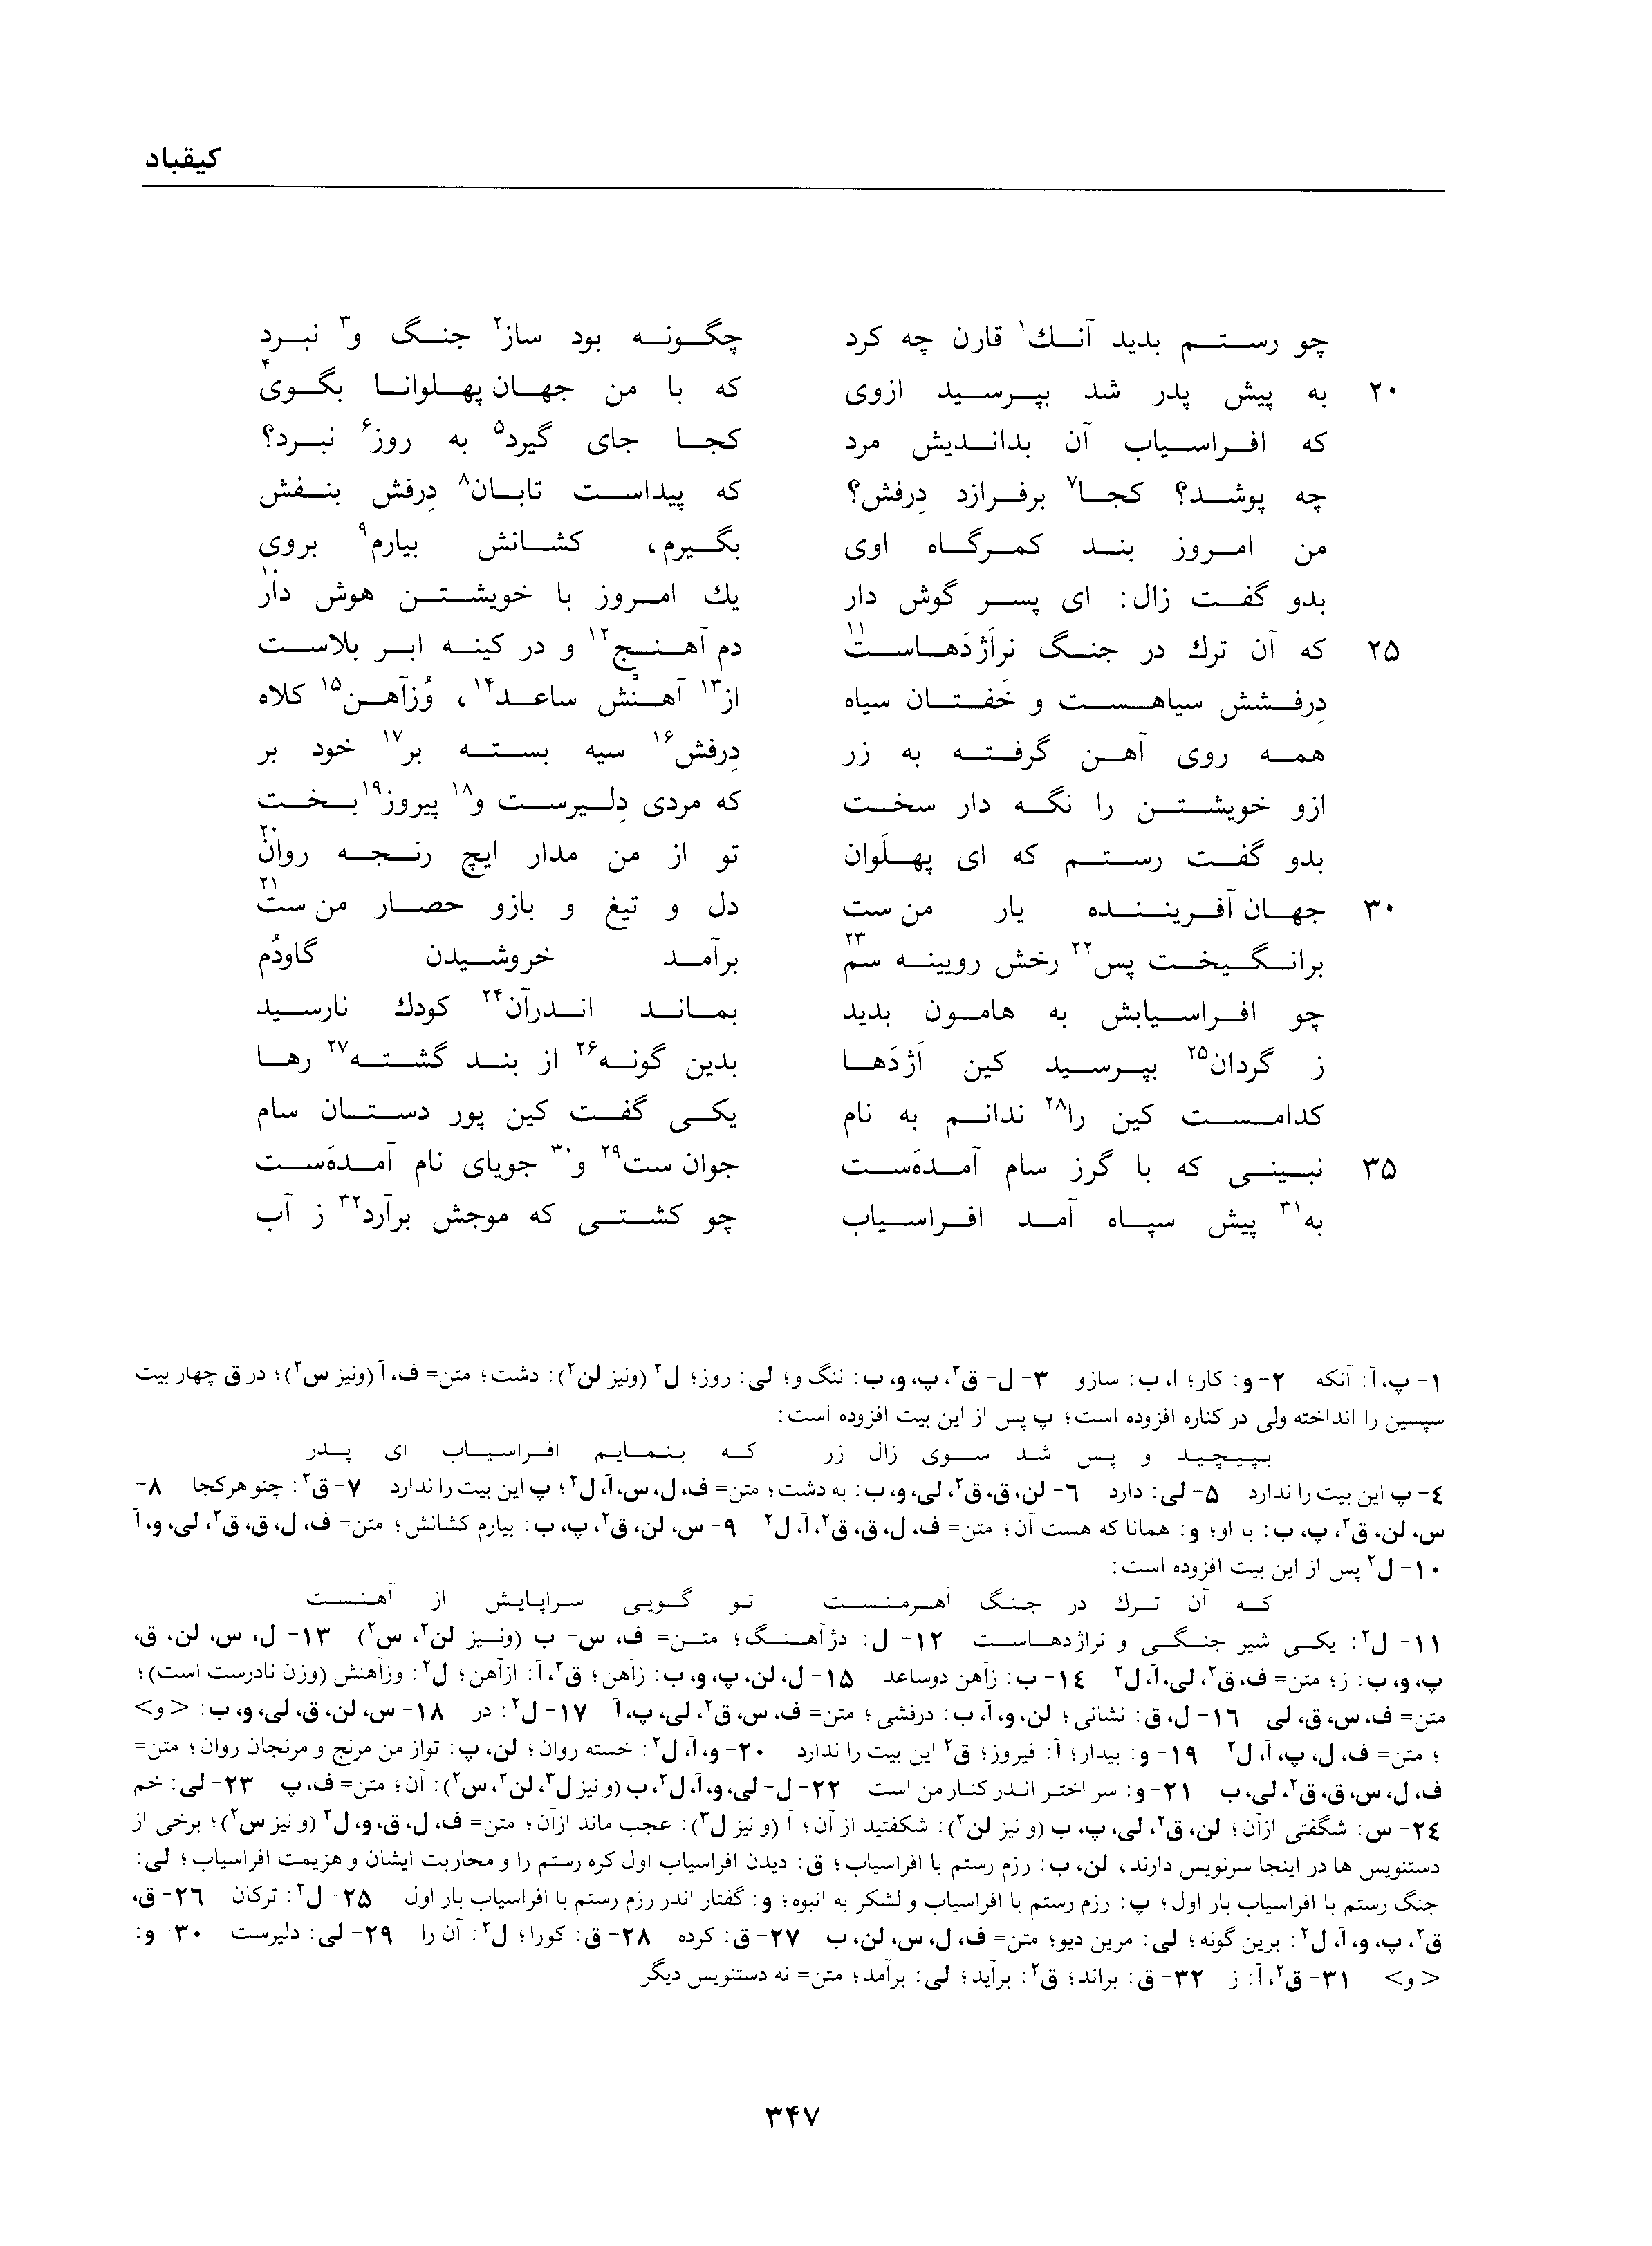 vol. 1, p. 347